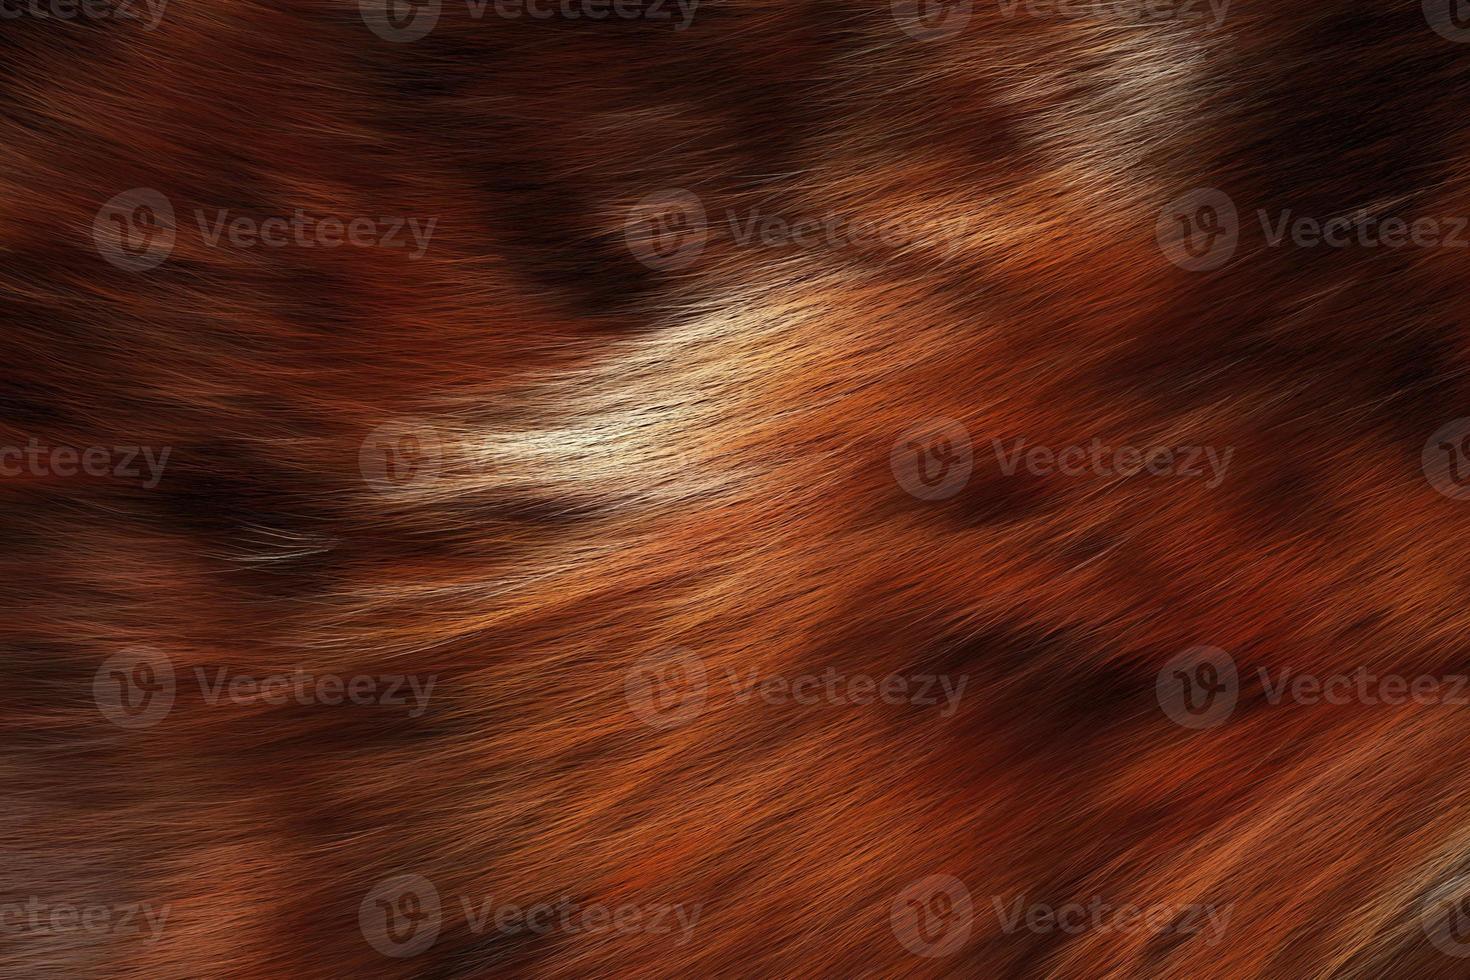 textura de lana de animales salvajes. fondo de piel de animal foto